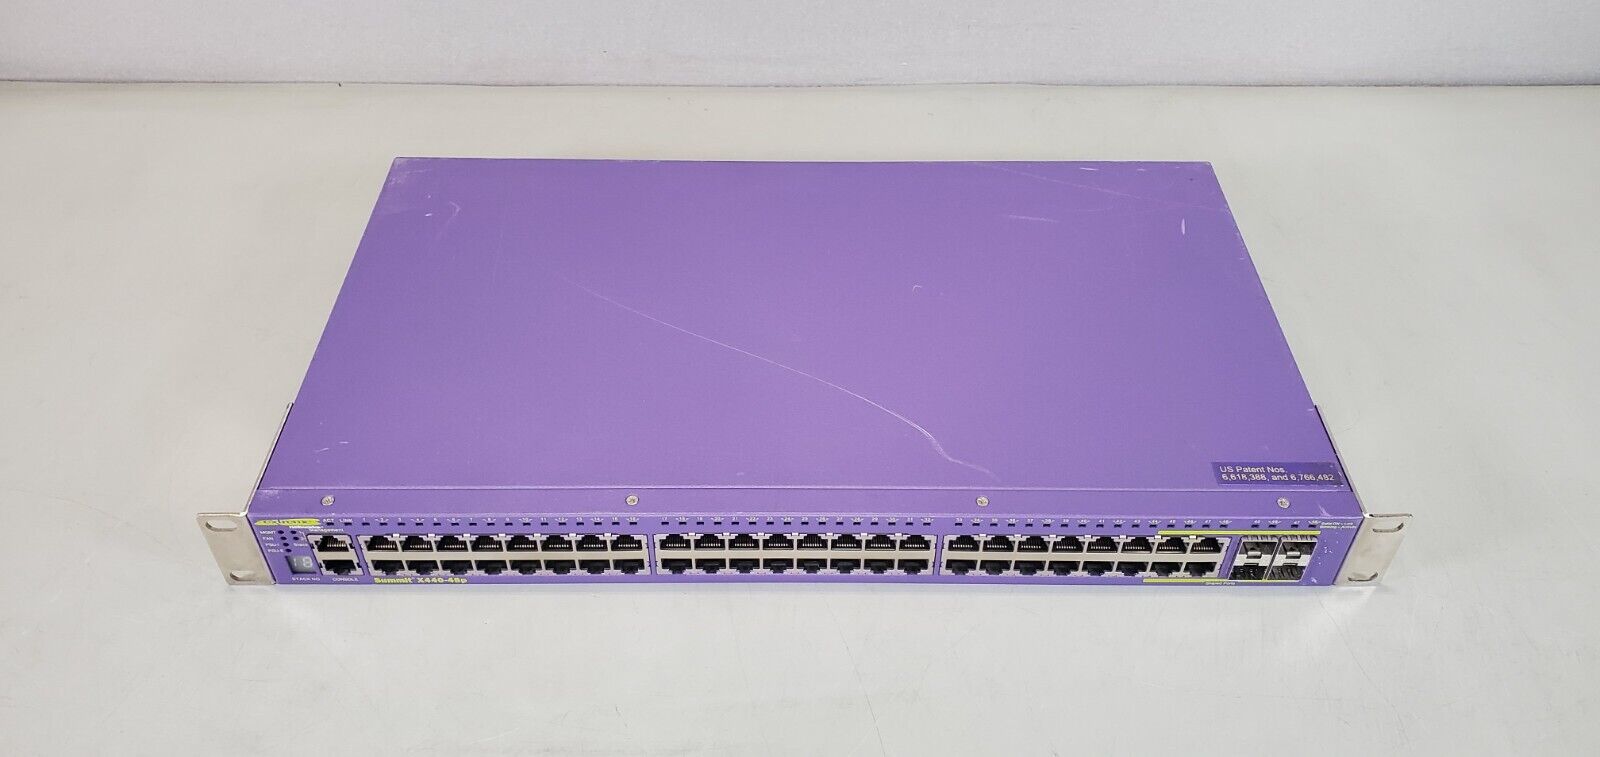 Extreme Networks Summit X440-48p 48 Port Gigabit Ethernet Managed POE Switch